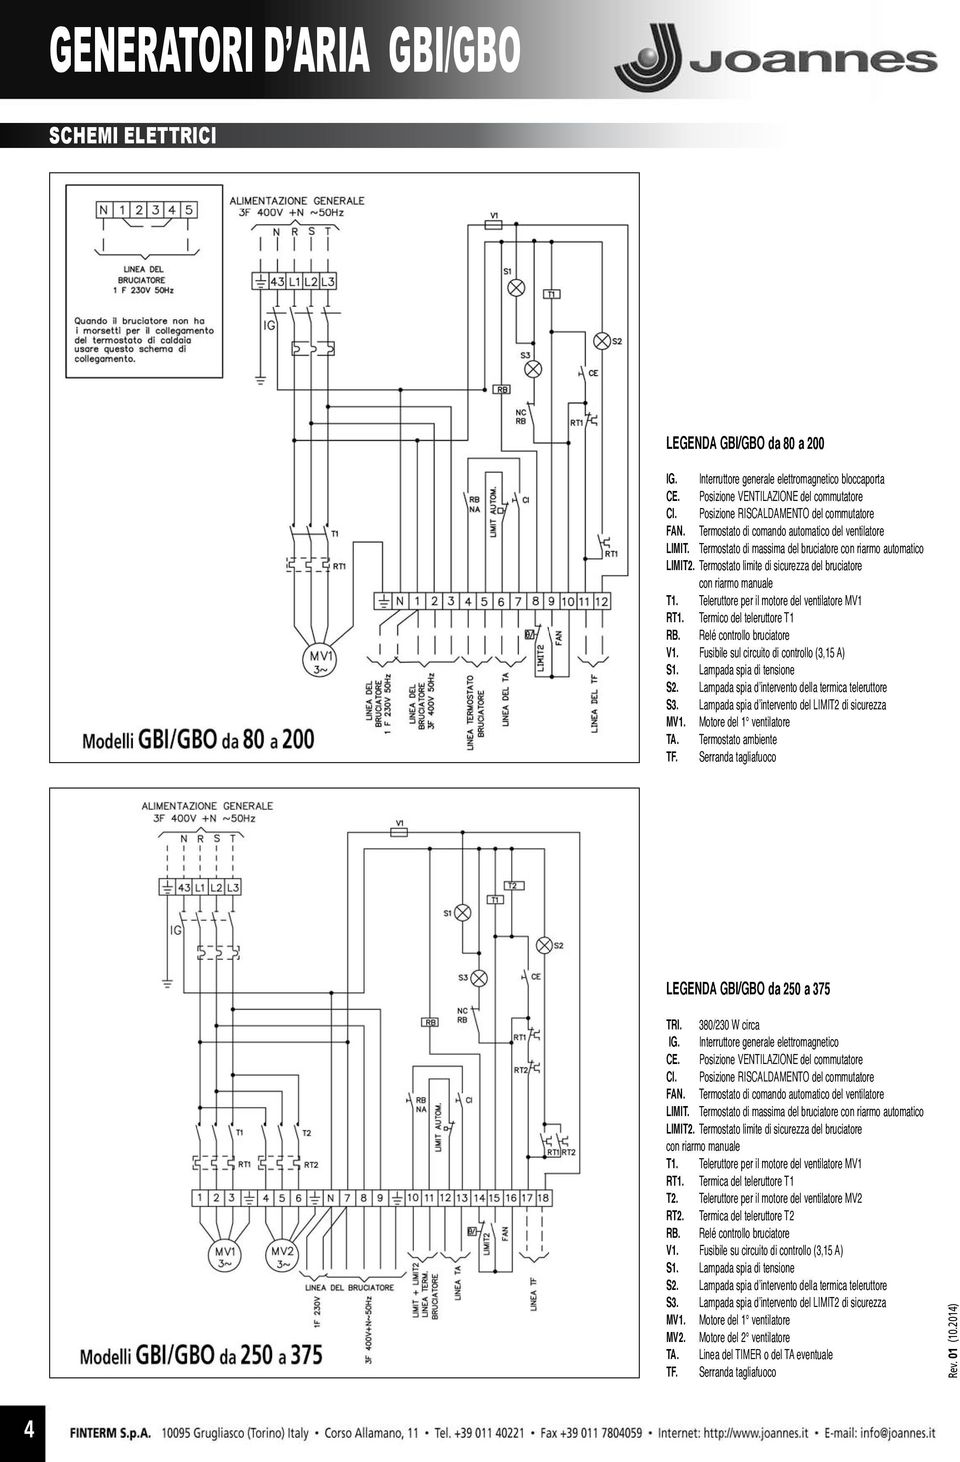 Teleruttore per il motore del ventilatore MV1 RT1. Termico del teleruttore T1 RB. Relé controllo bruciatore V1. Fusibile sul circuito di controllo (3,15 A) S1. Lampada spia di tensione S2.